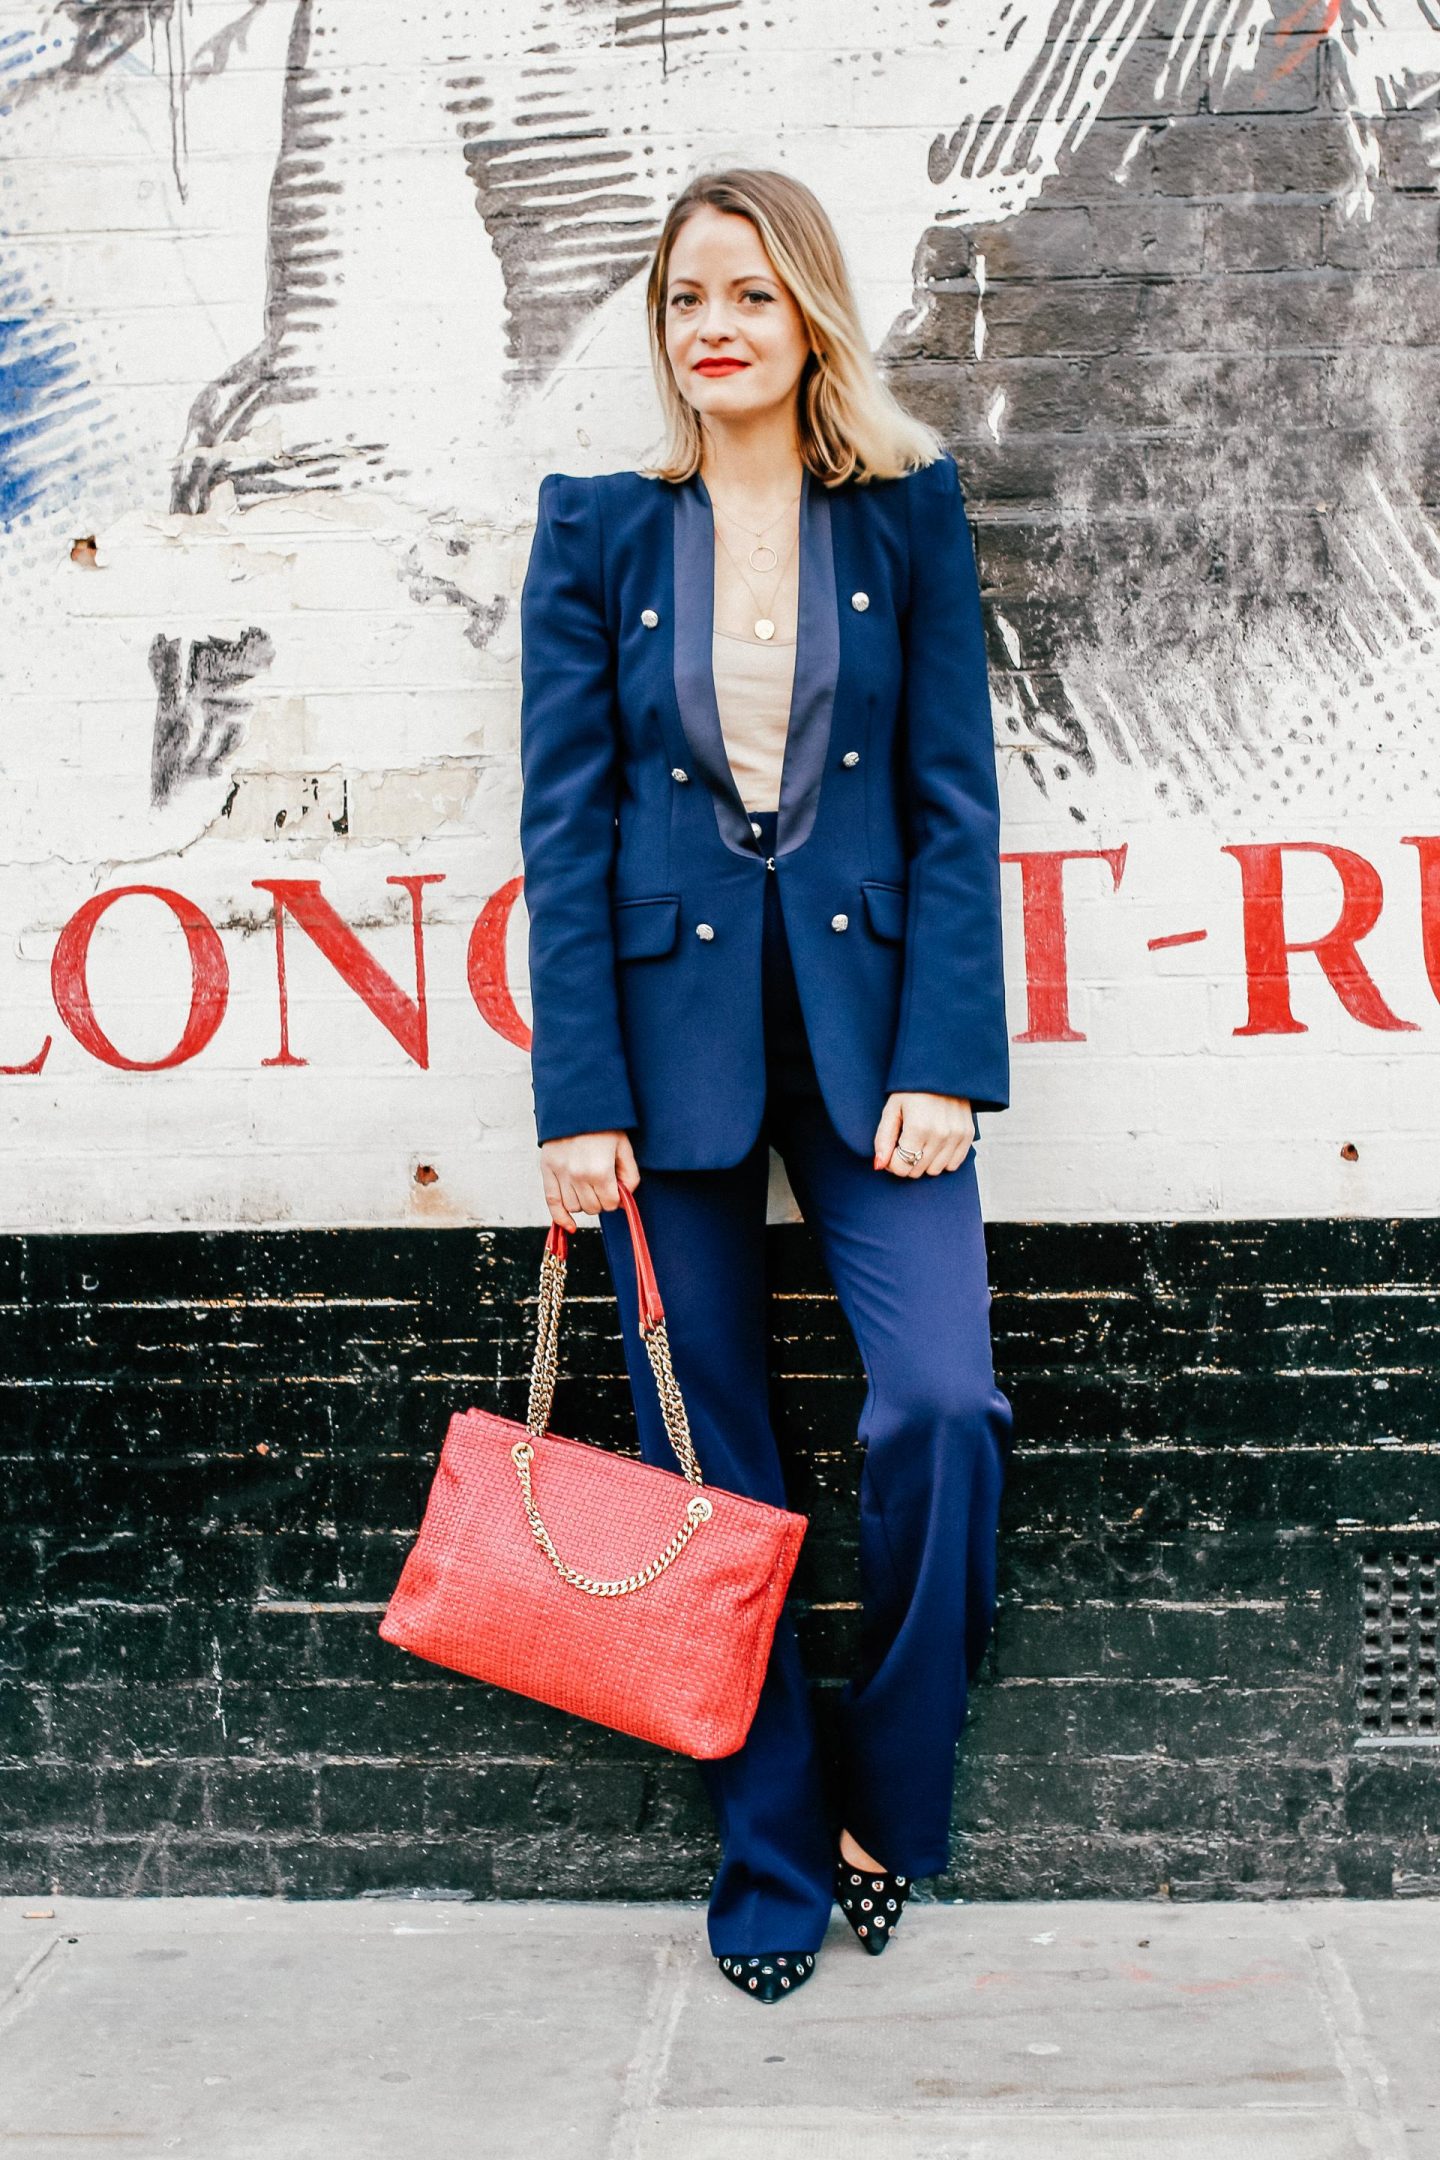 London Fashion Week - ASOS Blue Suit